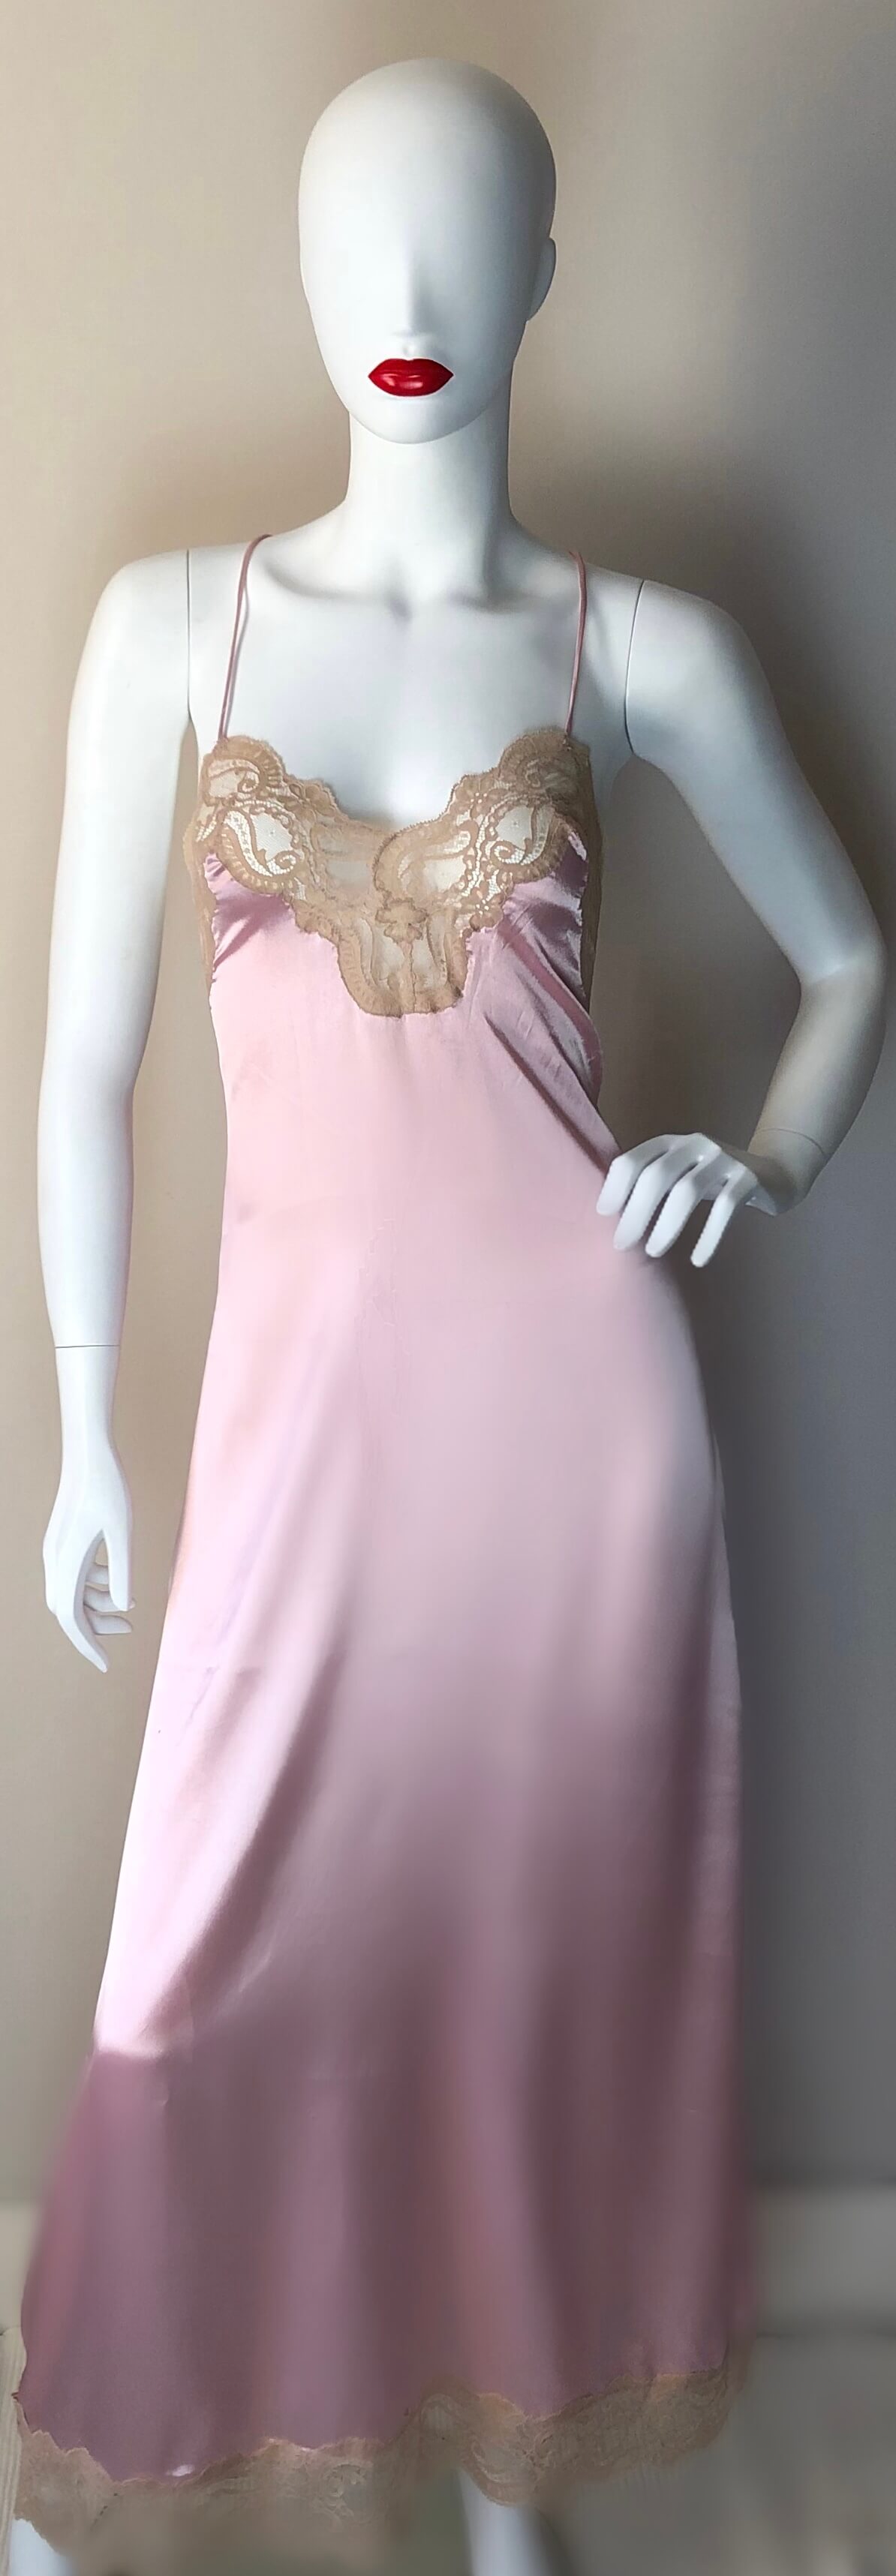 Pink Janet Reger satin dress